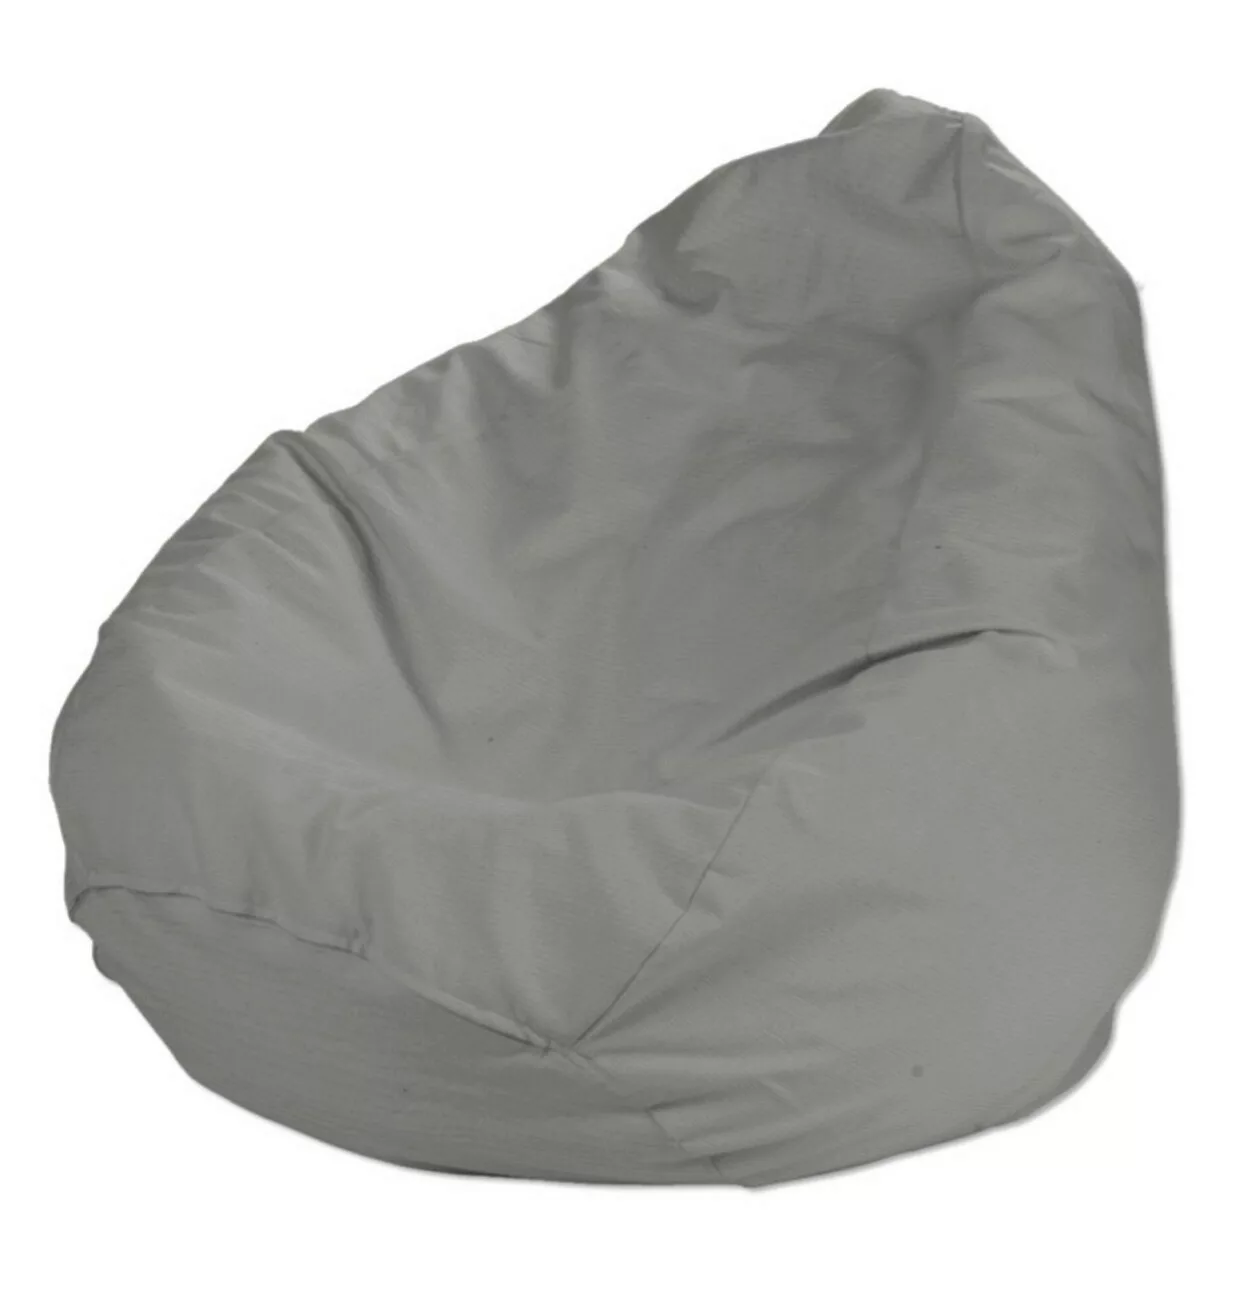 Bezug für Sitzsack, grau, Bezug für Sitzsack Ø50 x 85 cm, Loneta (133-24) günstig online kaufen